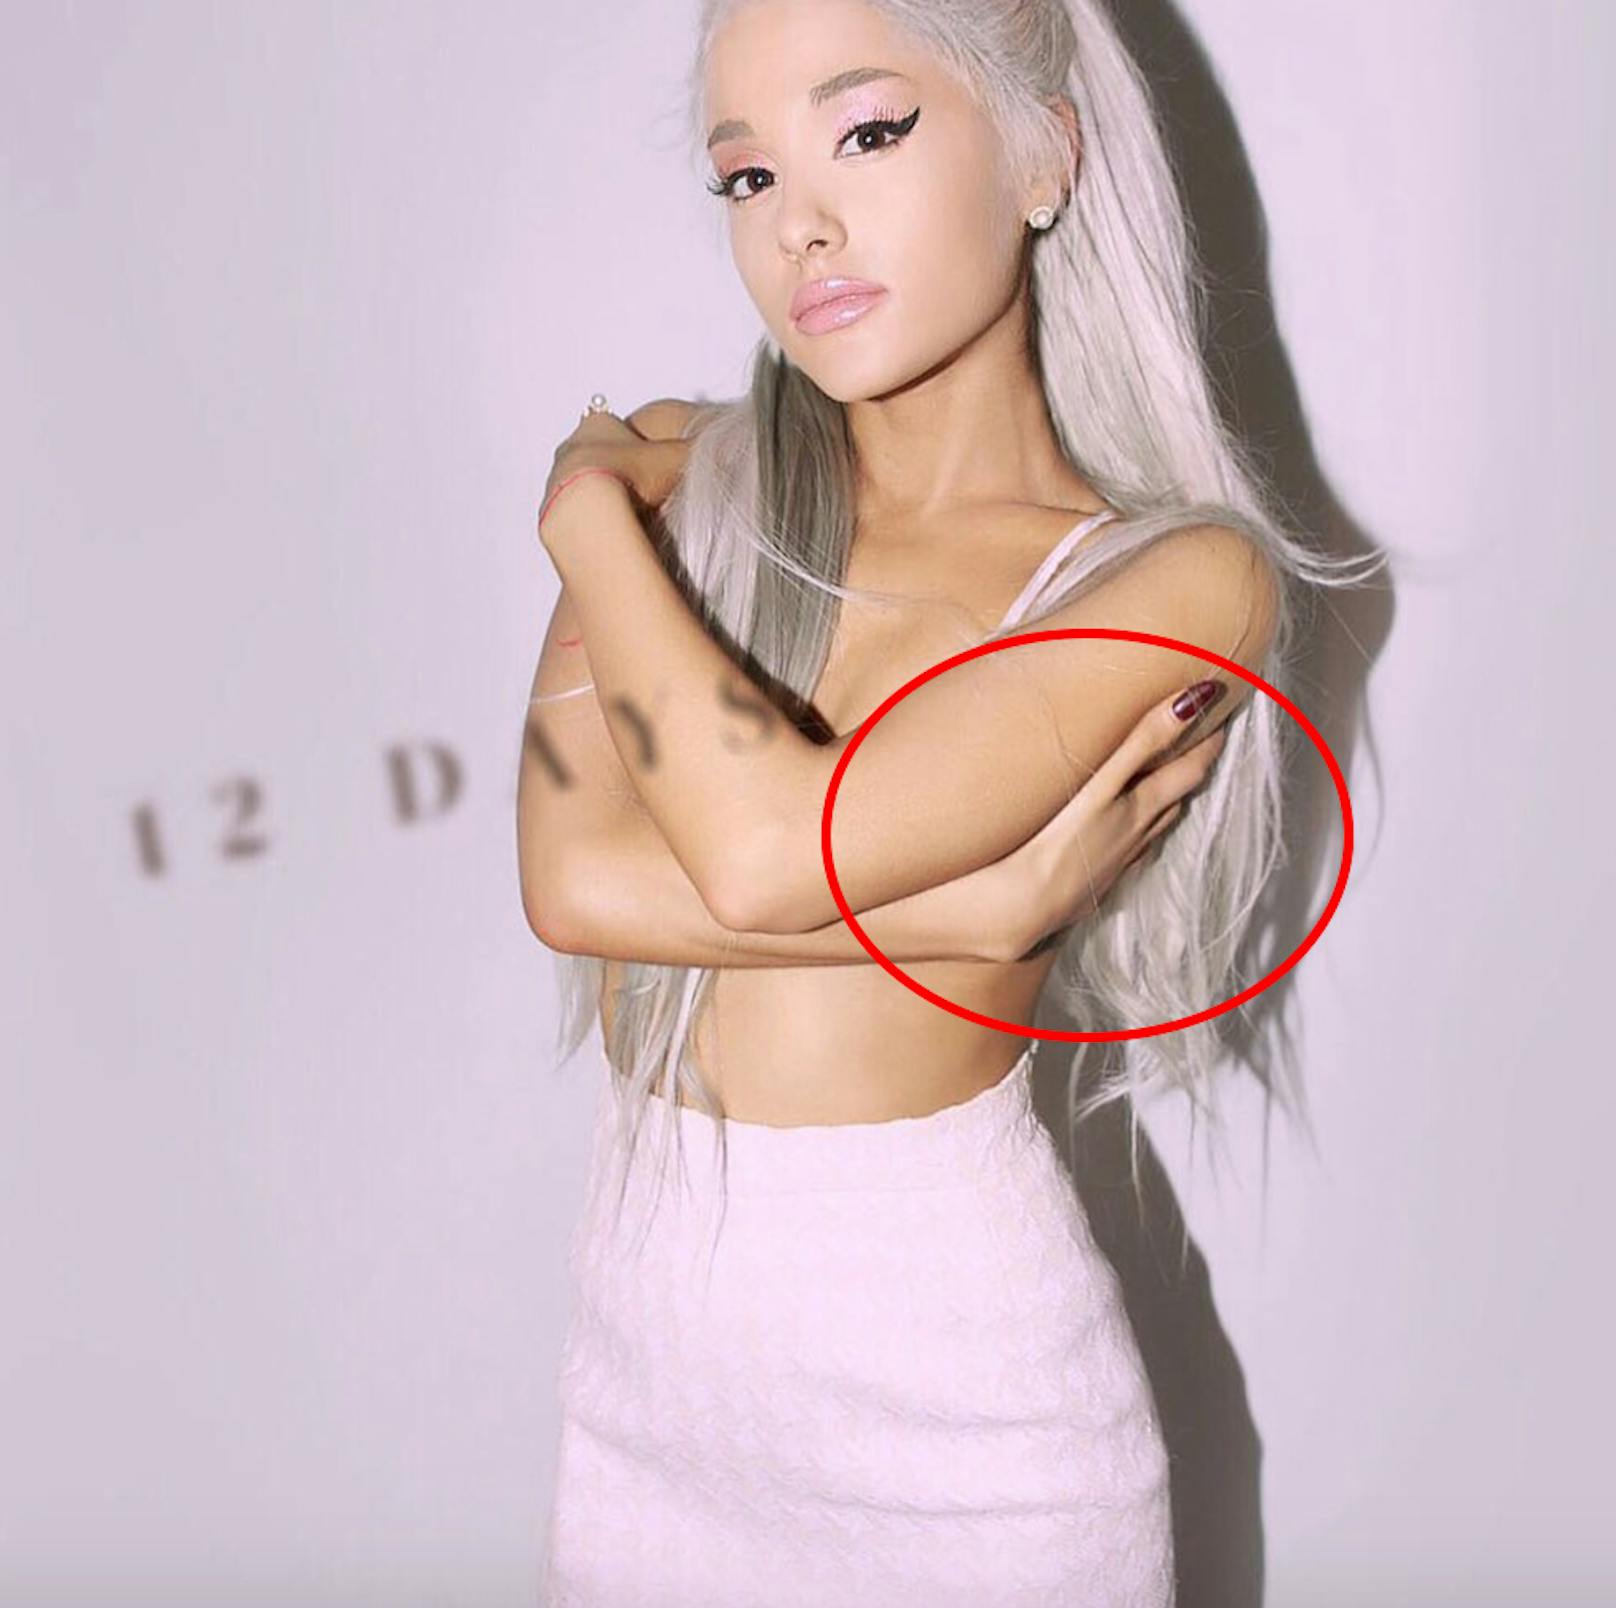 Ariana Grandes sexy Pose nützt gar nichts, sobald einmal der Blick auf ihre langgezogenen Alien-Hände fällt. 